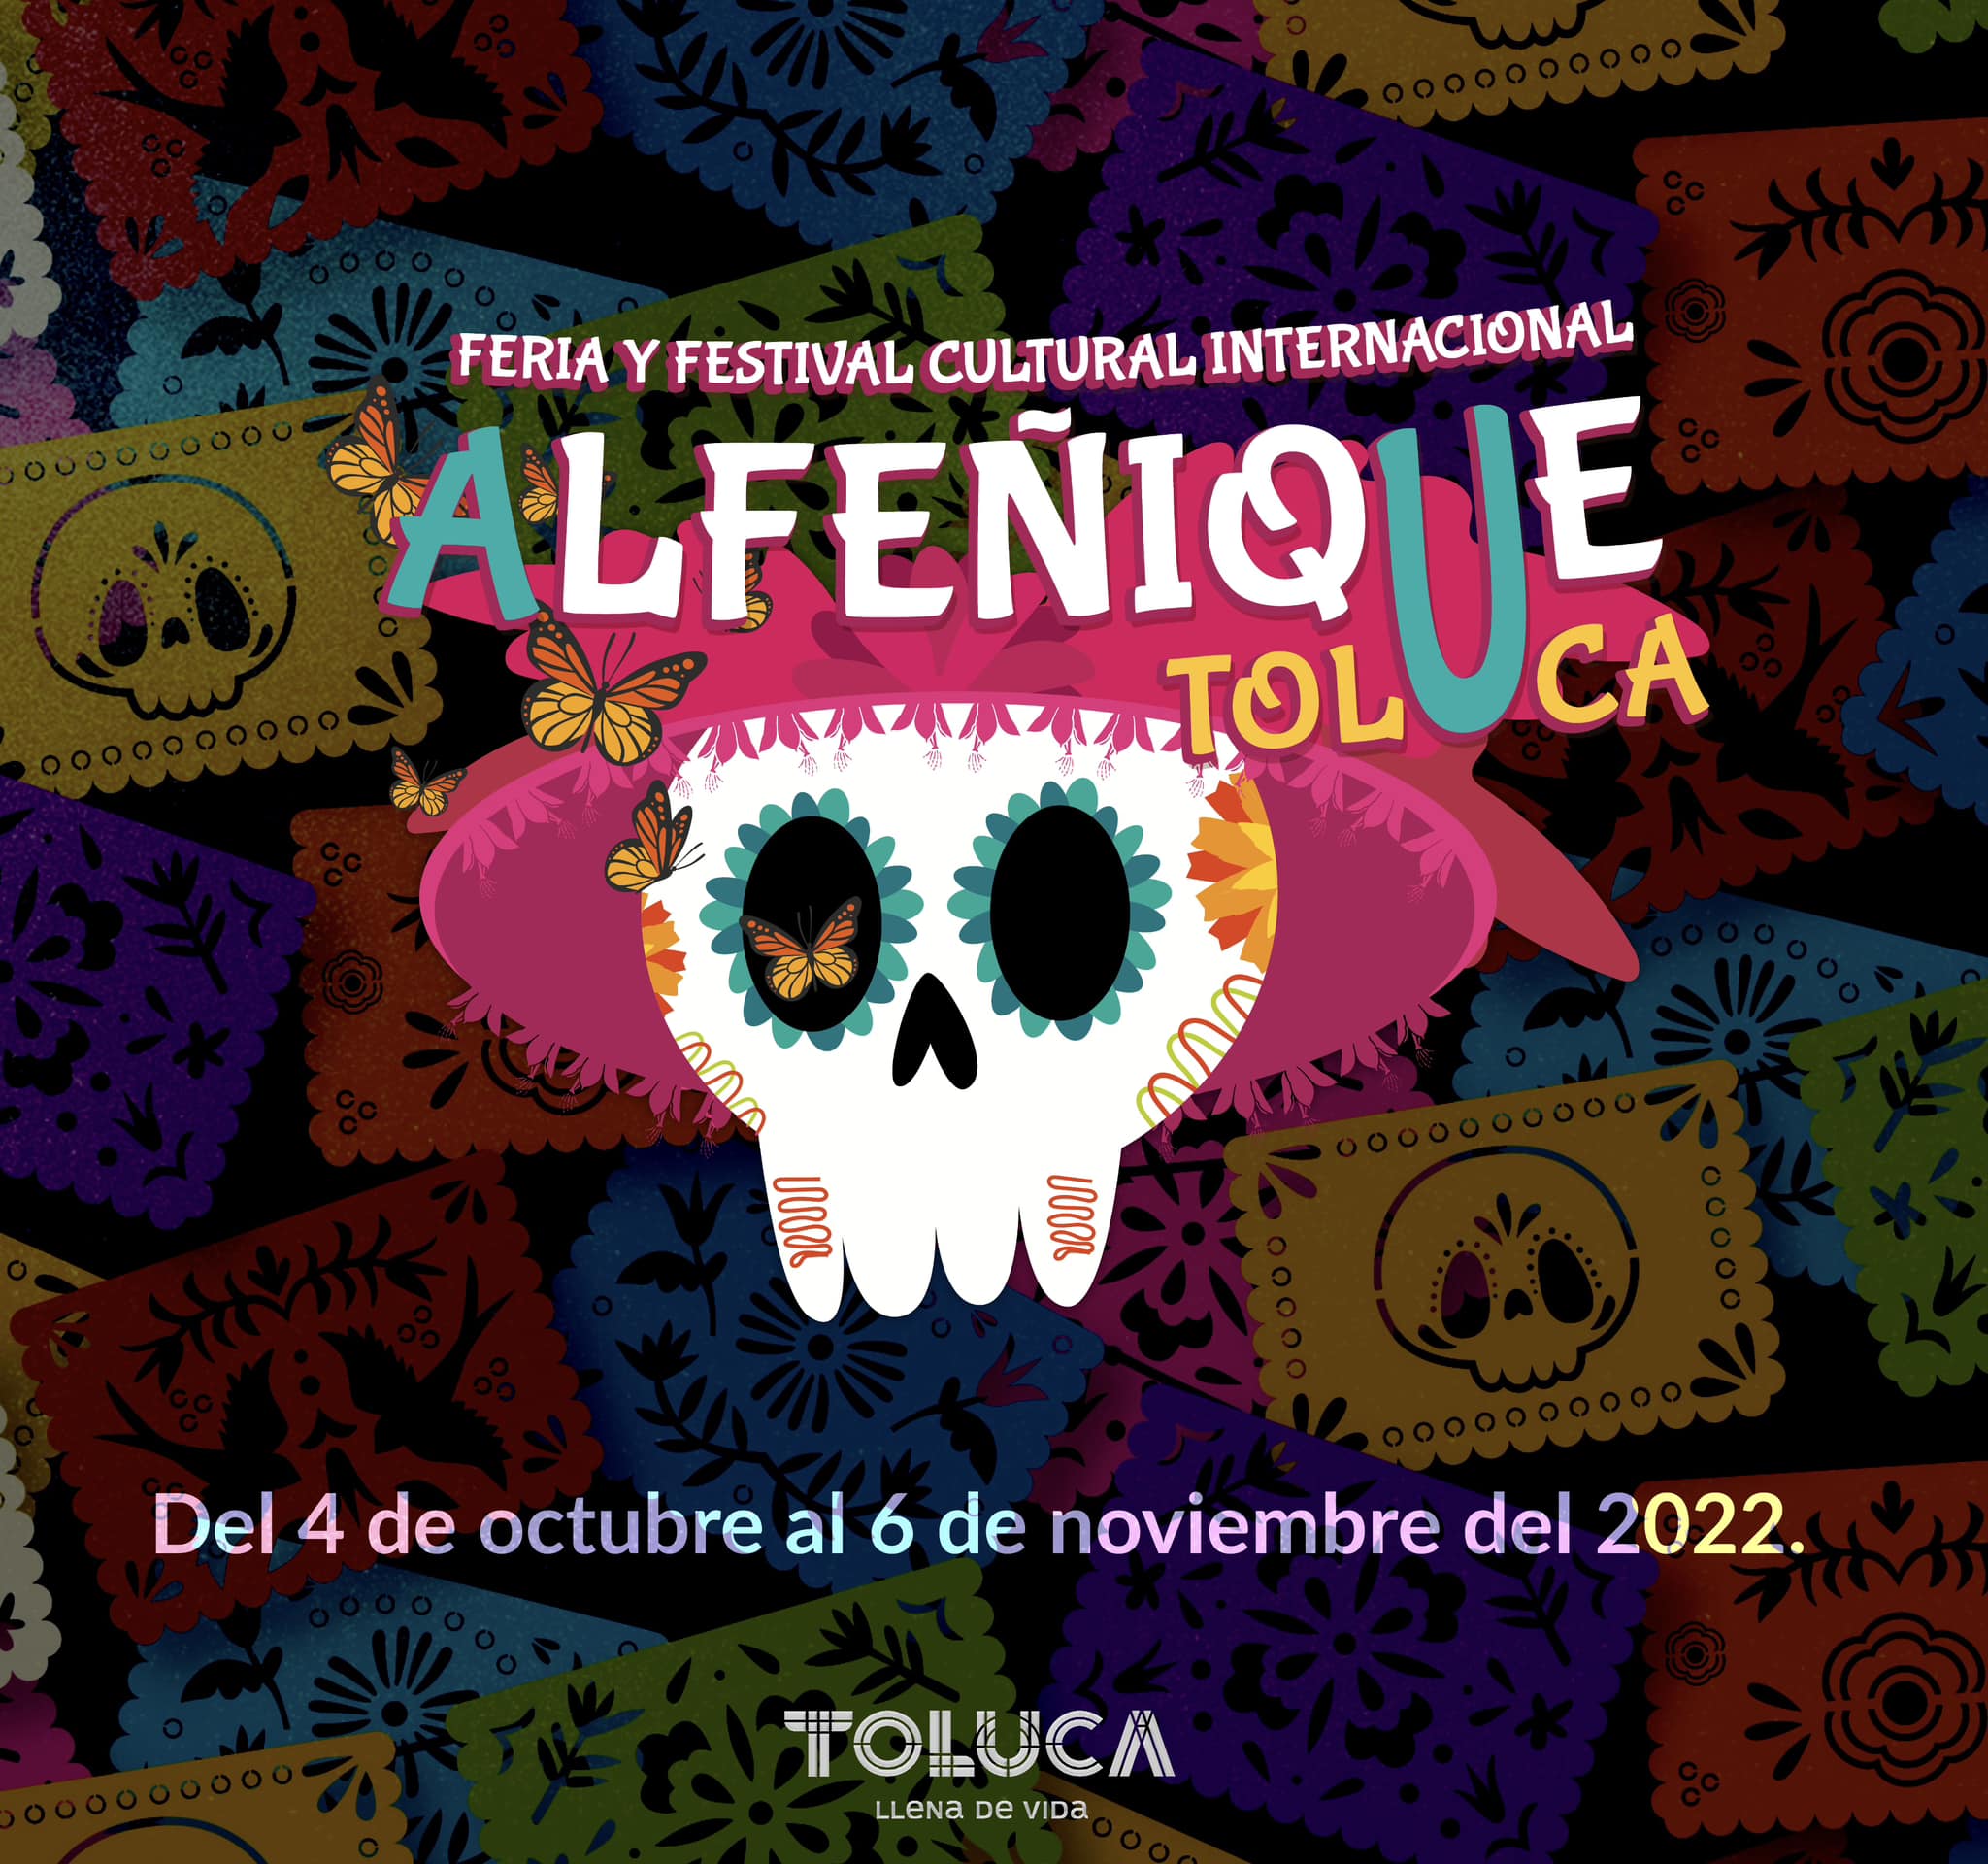 Feria del Alfeñique Toluca 2022. Cartel y programación oficial en PDF